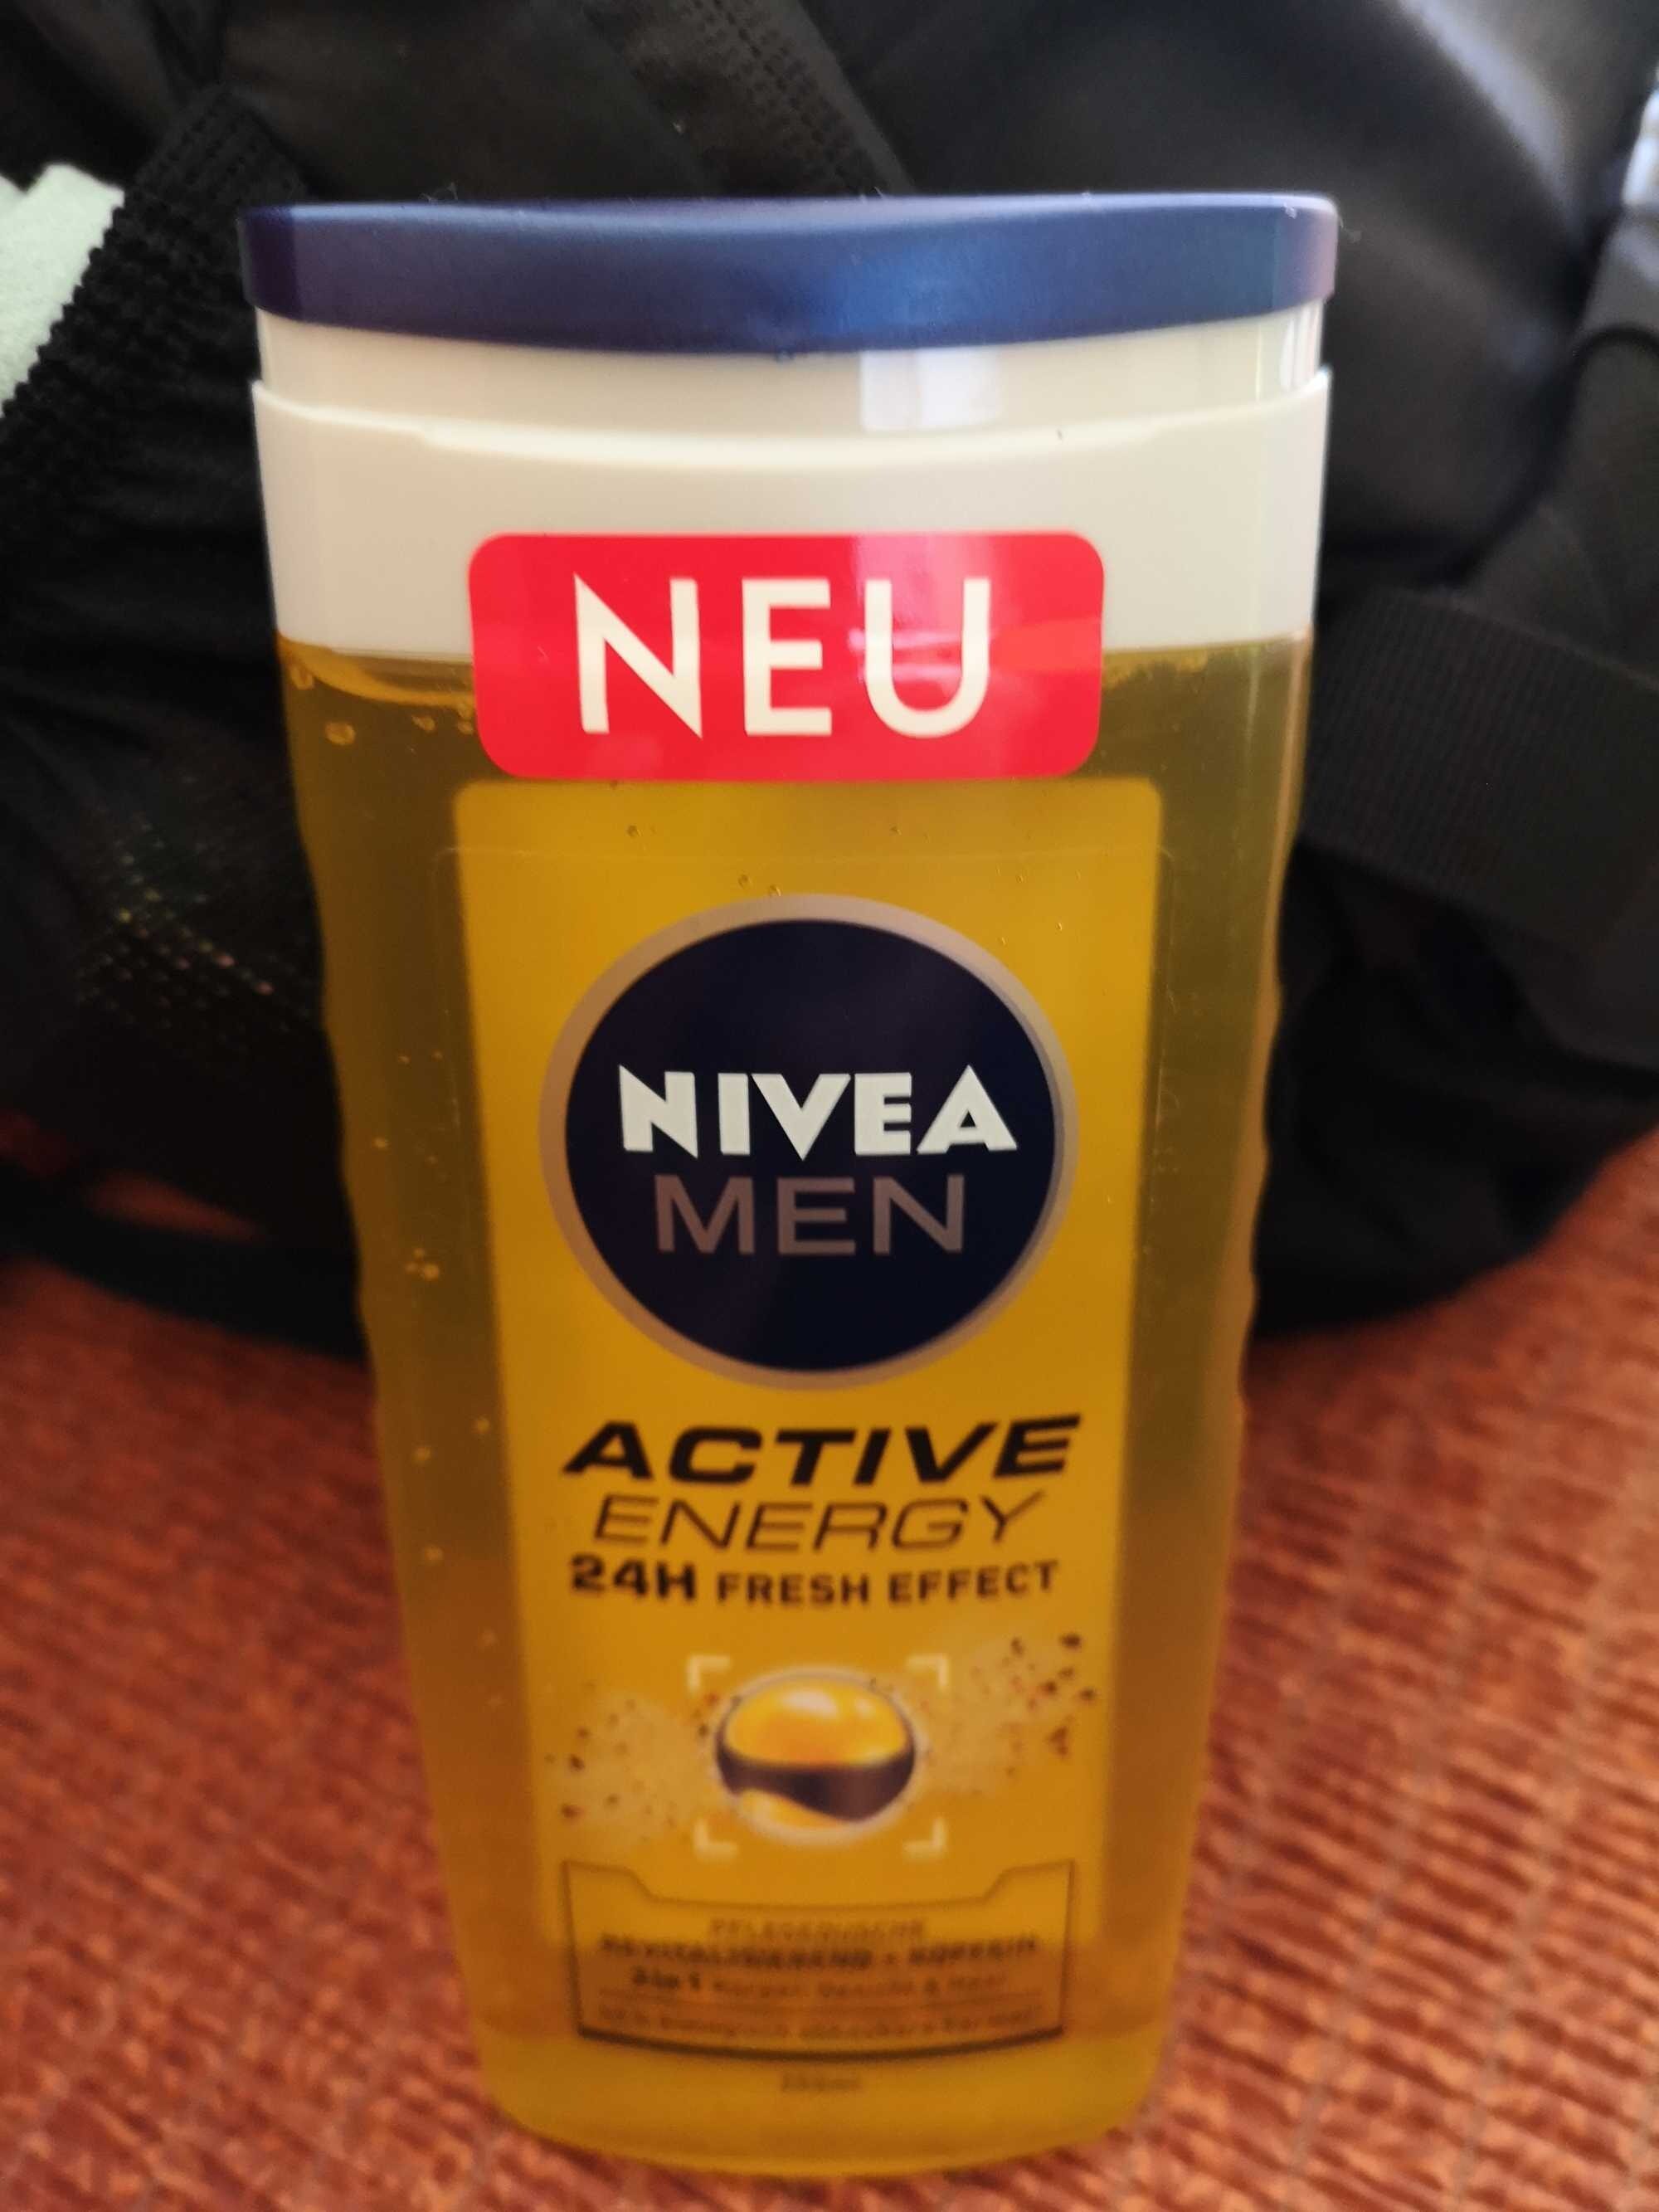 Nivea Men Active Energy 24h Fresh Effect - Product - de